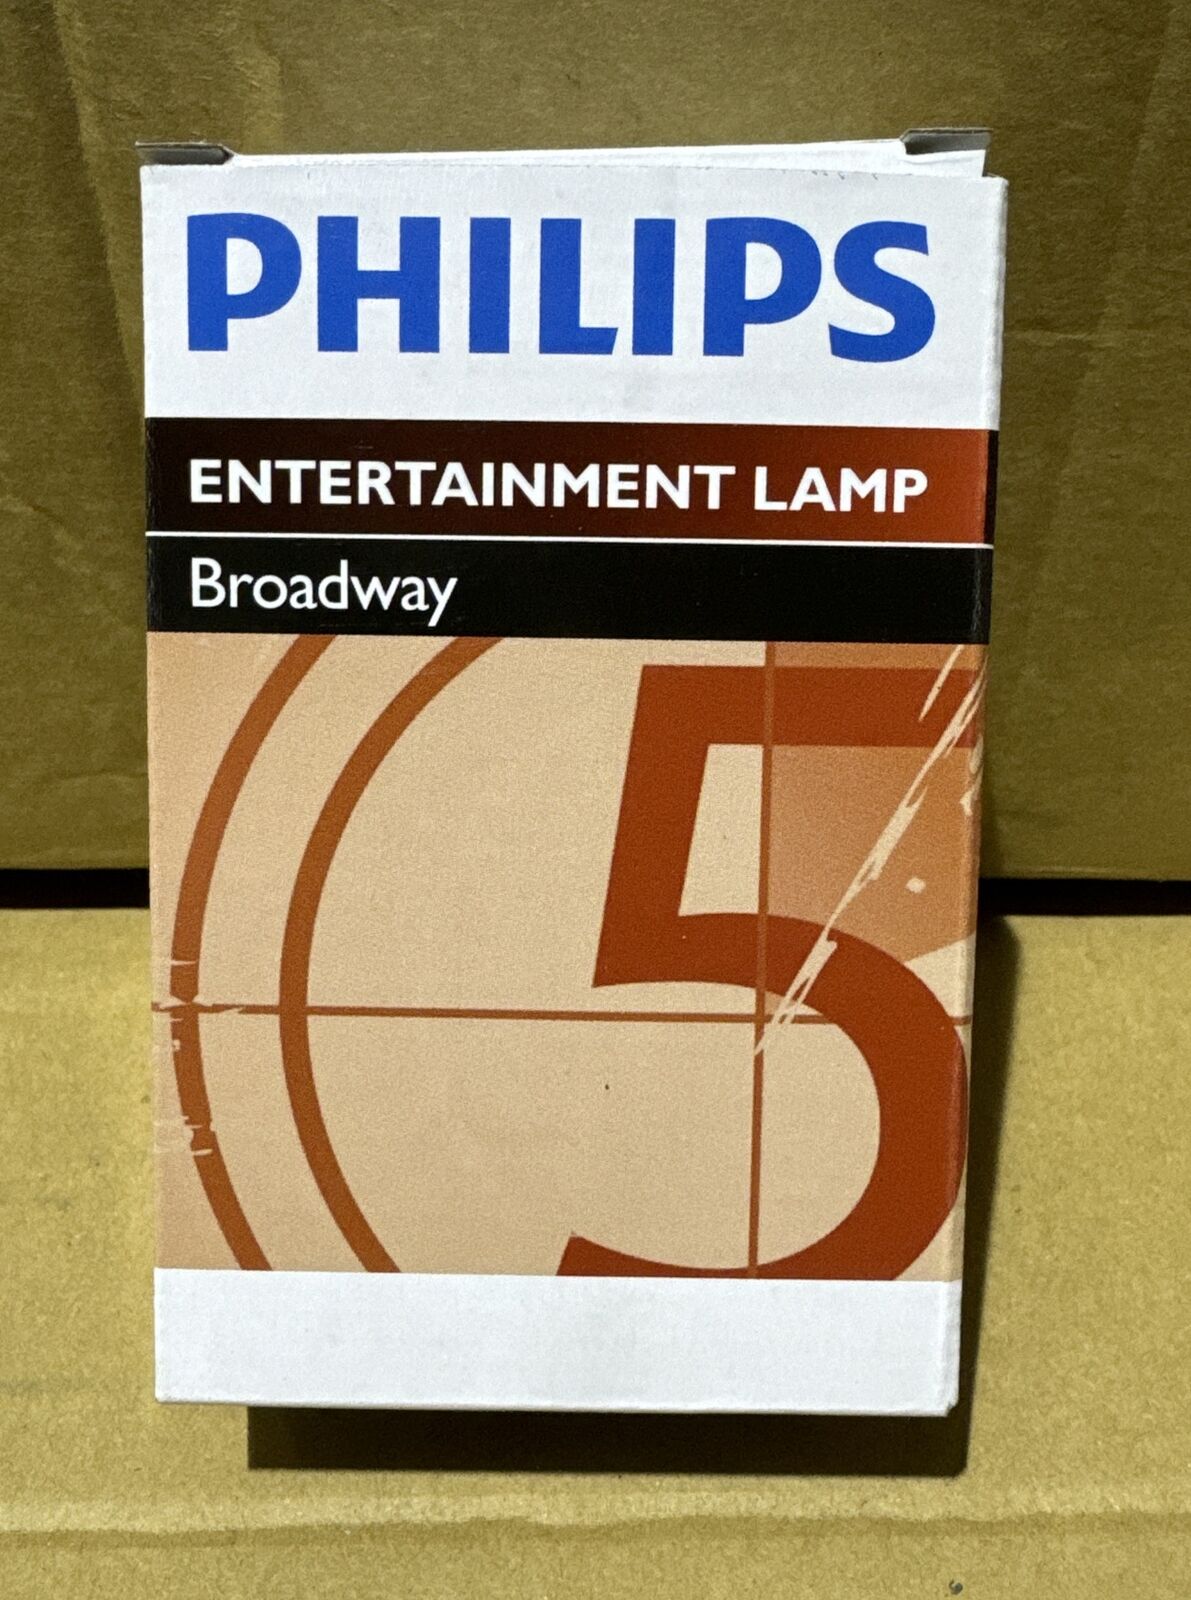 Philips Broadway Metal Halide Lamp MSR 700 SA GY9.5 (928170305115) - Brand New